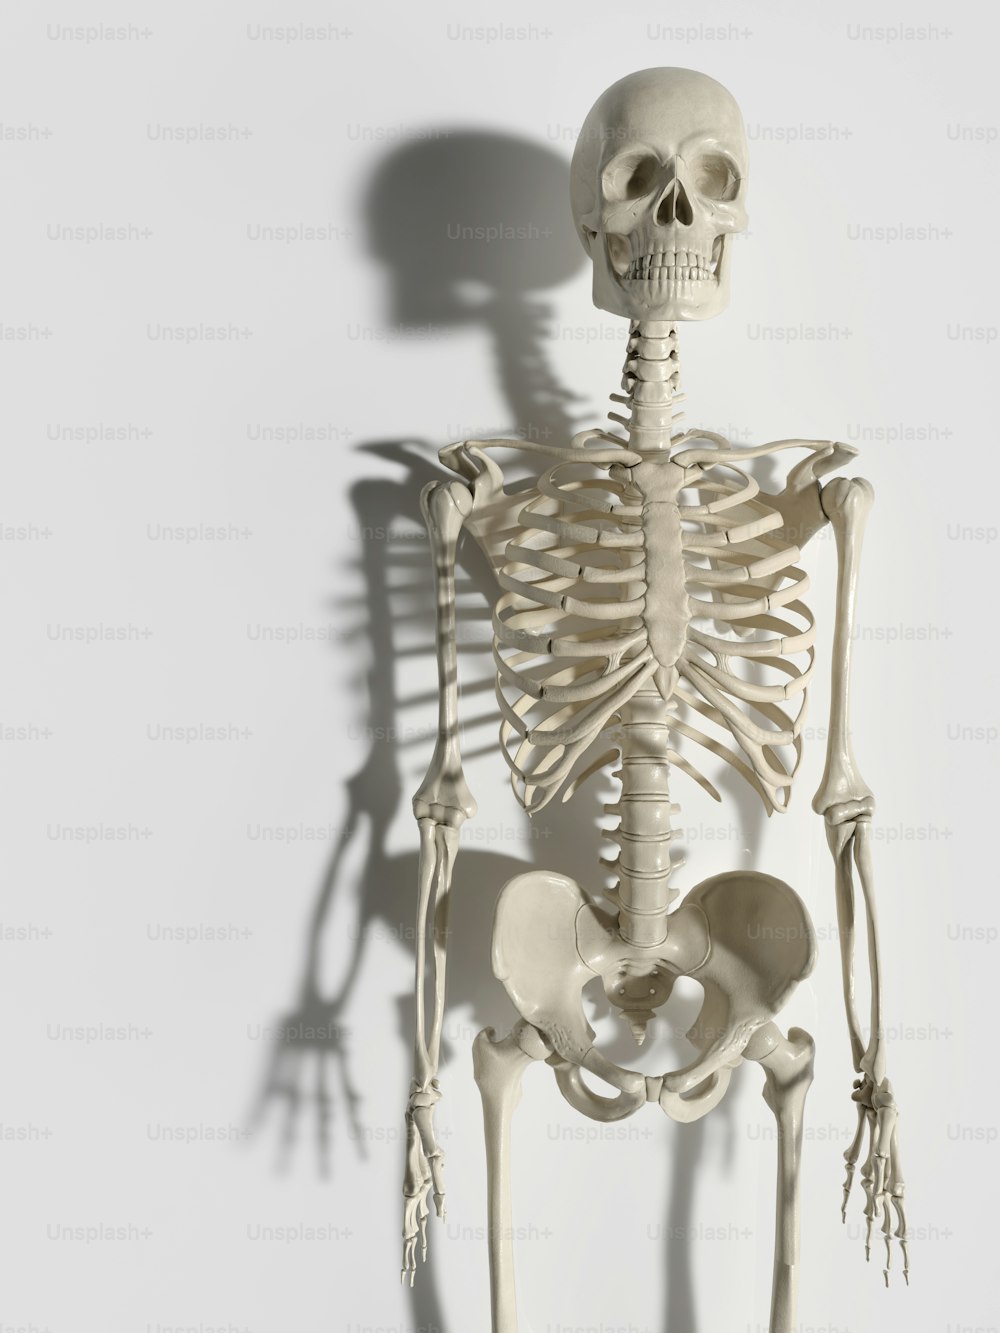 Uno scheletro è mostrato con un'ombra sul muro